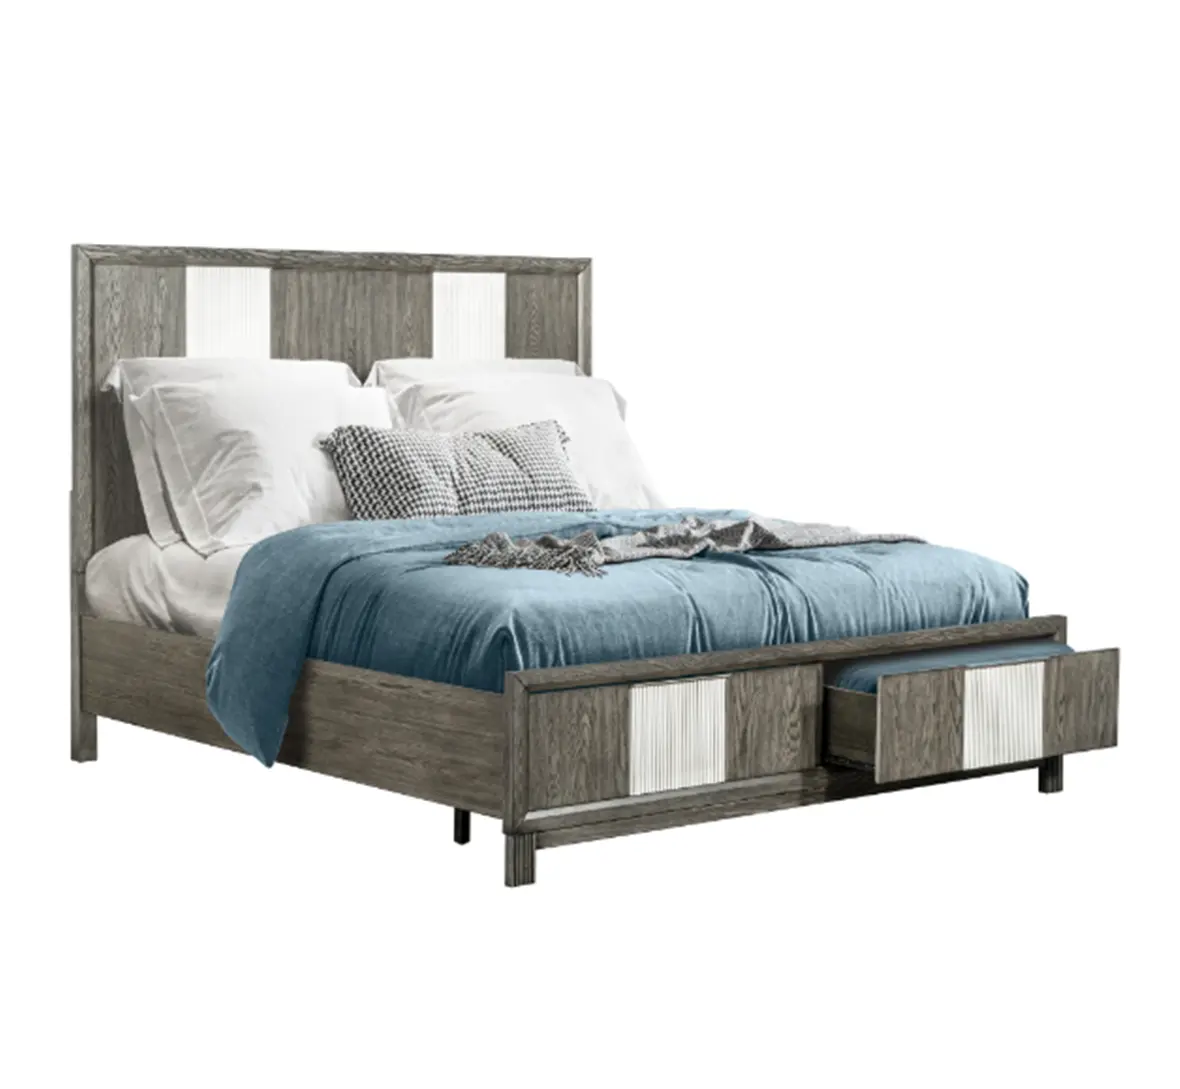 Yatak odası yeni tasarım ahşap çıtalar çerçeve yatak katı ahşap yumuşak yatak başlık yatak tabanı ile iyi fiyat